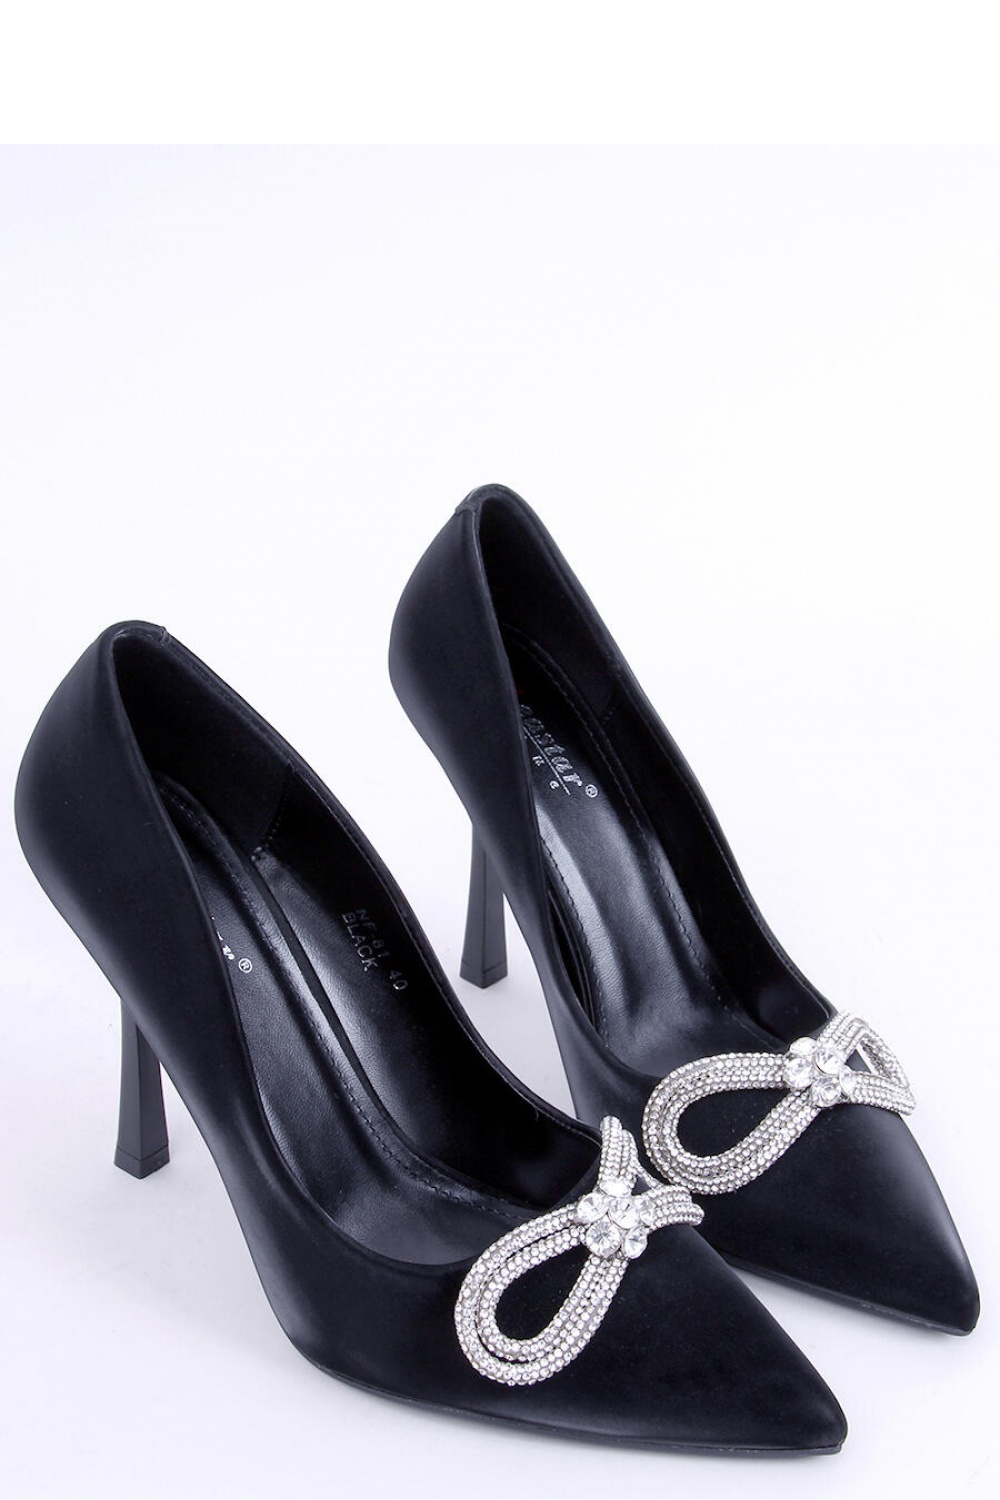 High heels model 172826 Inello